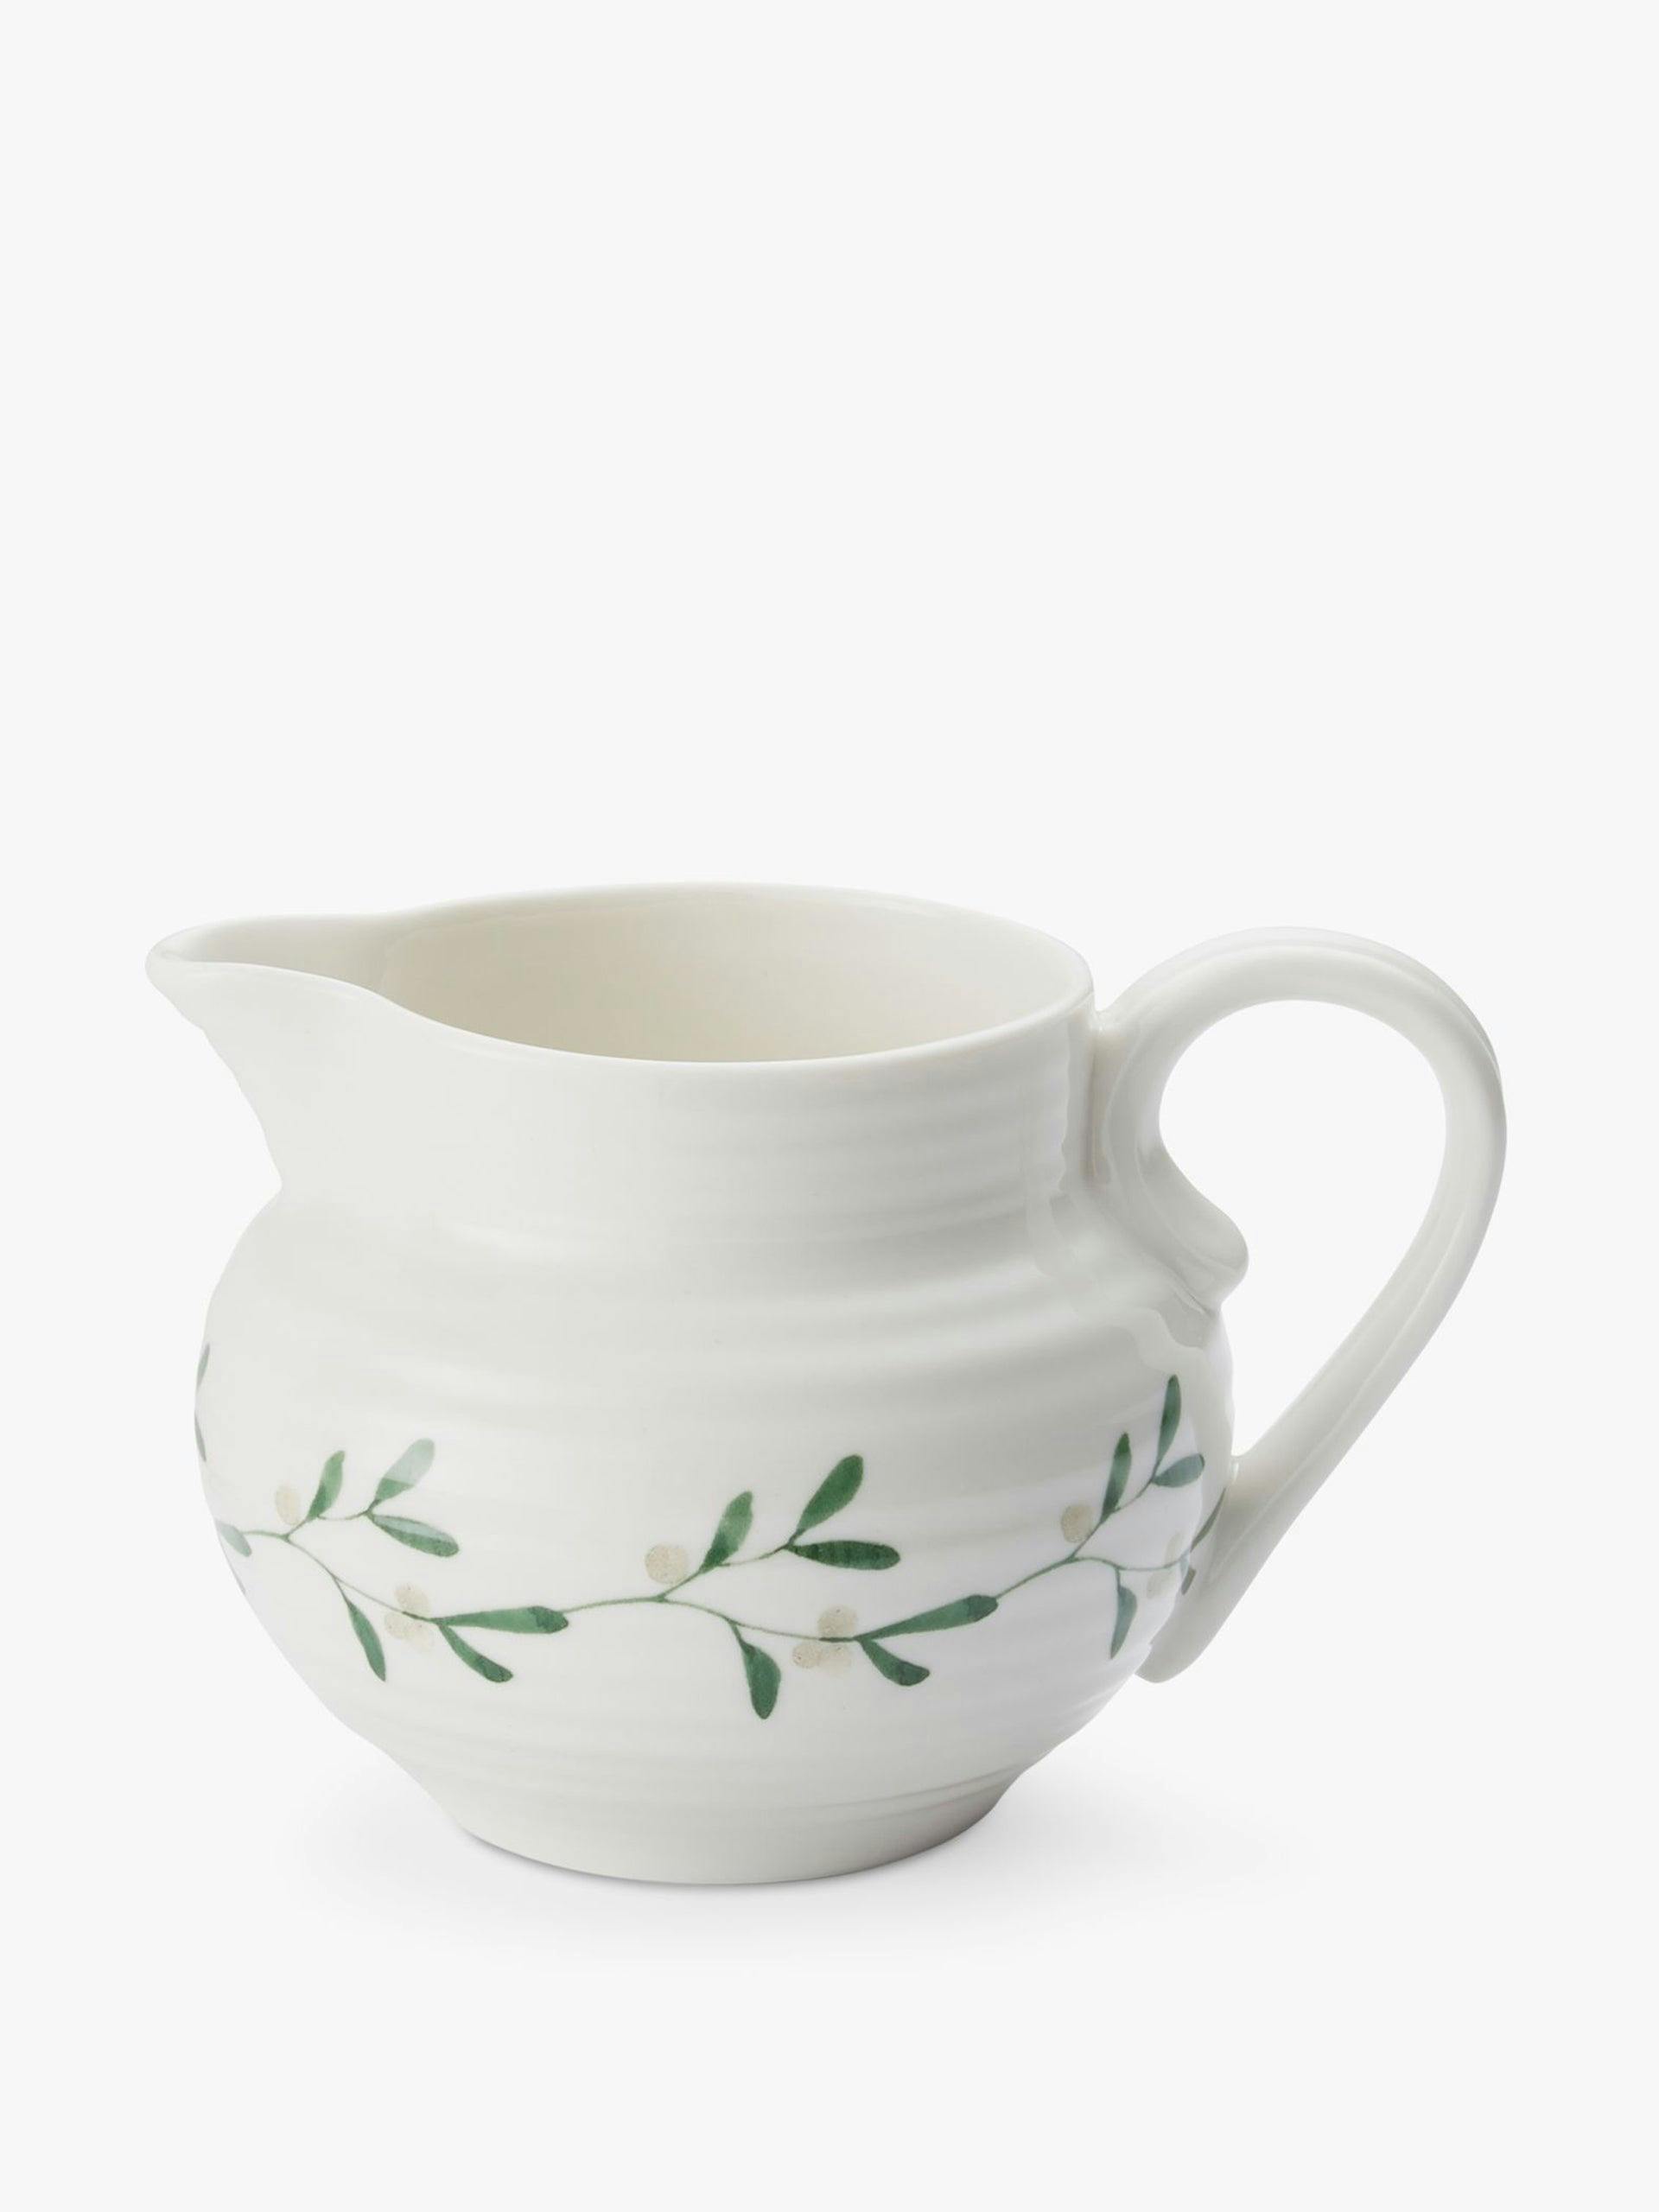 Mistletoe porcelain creamer